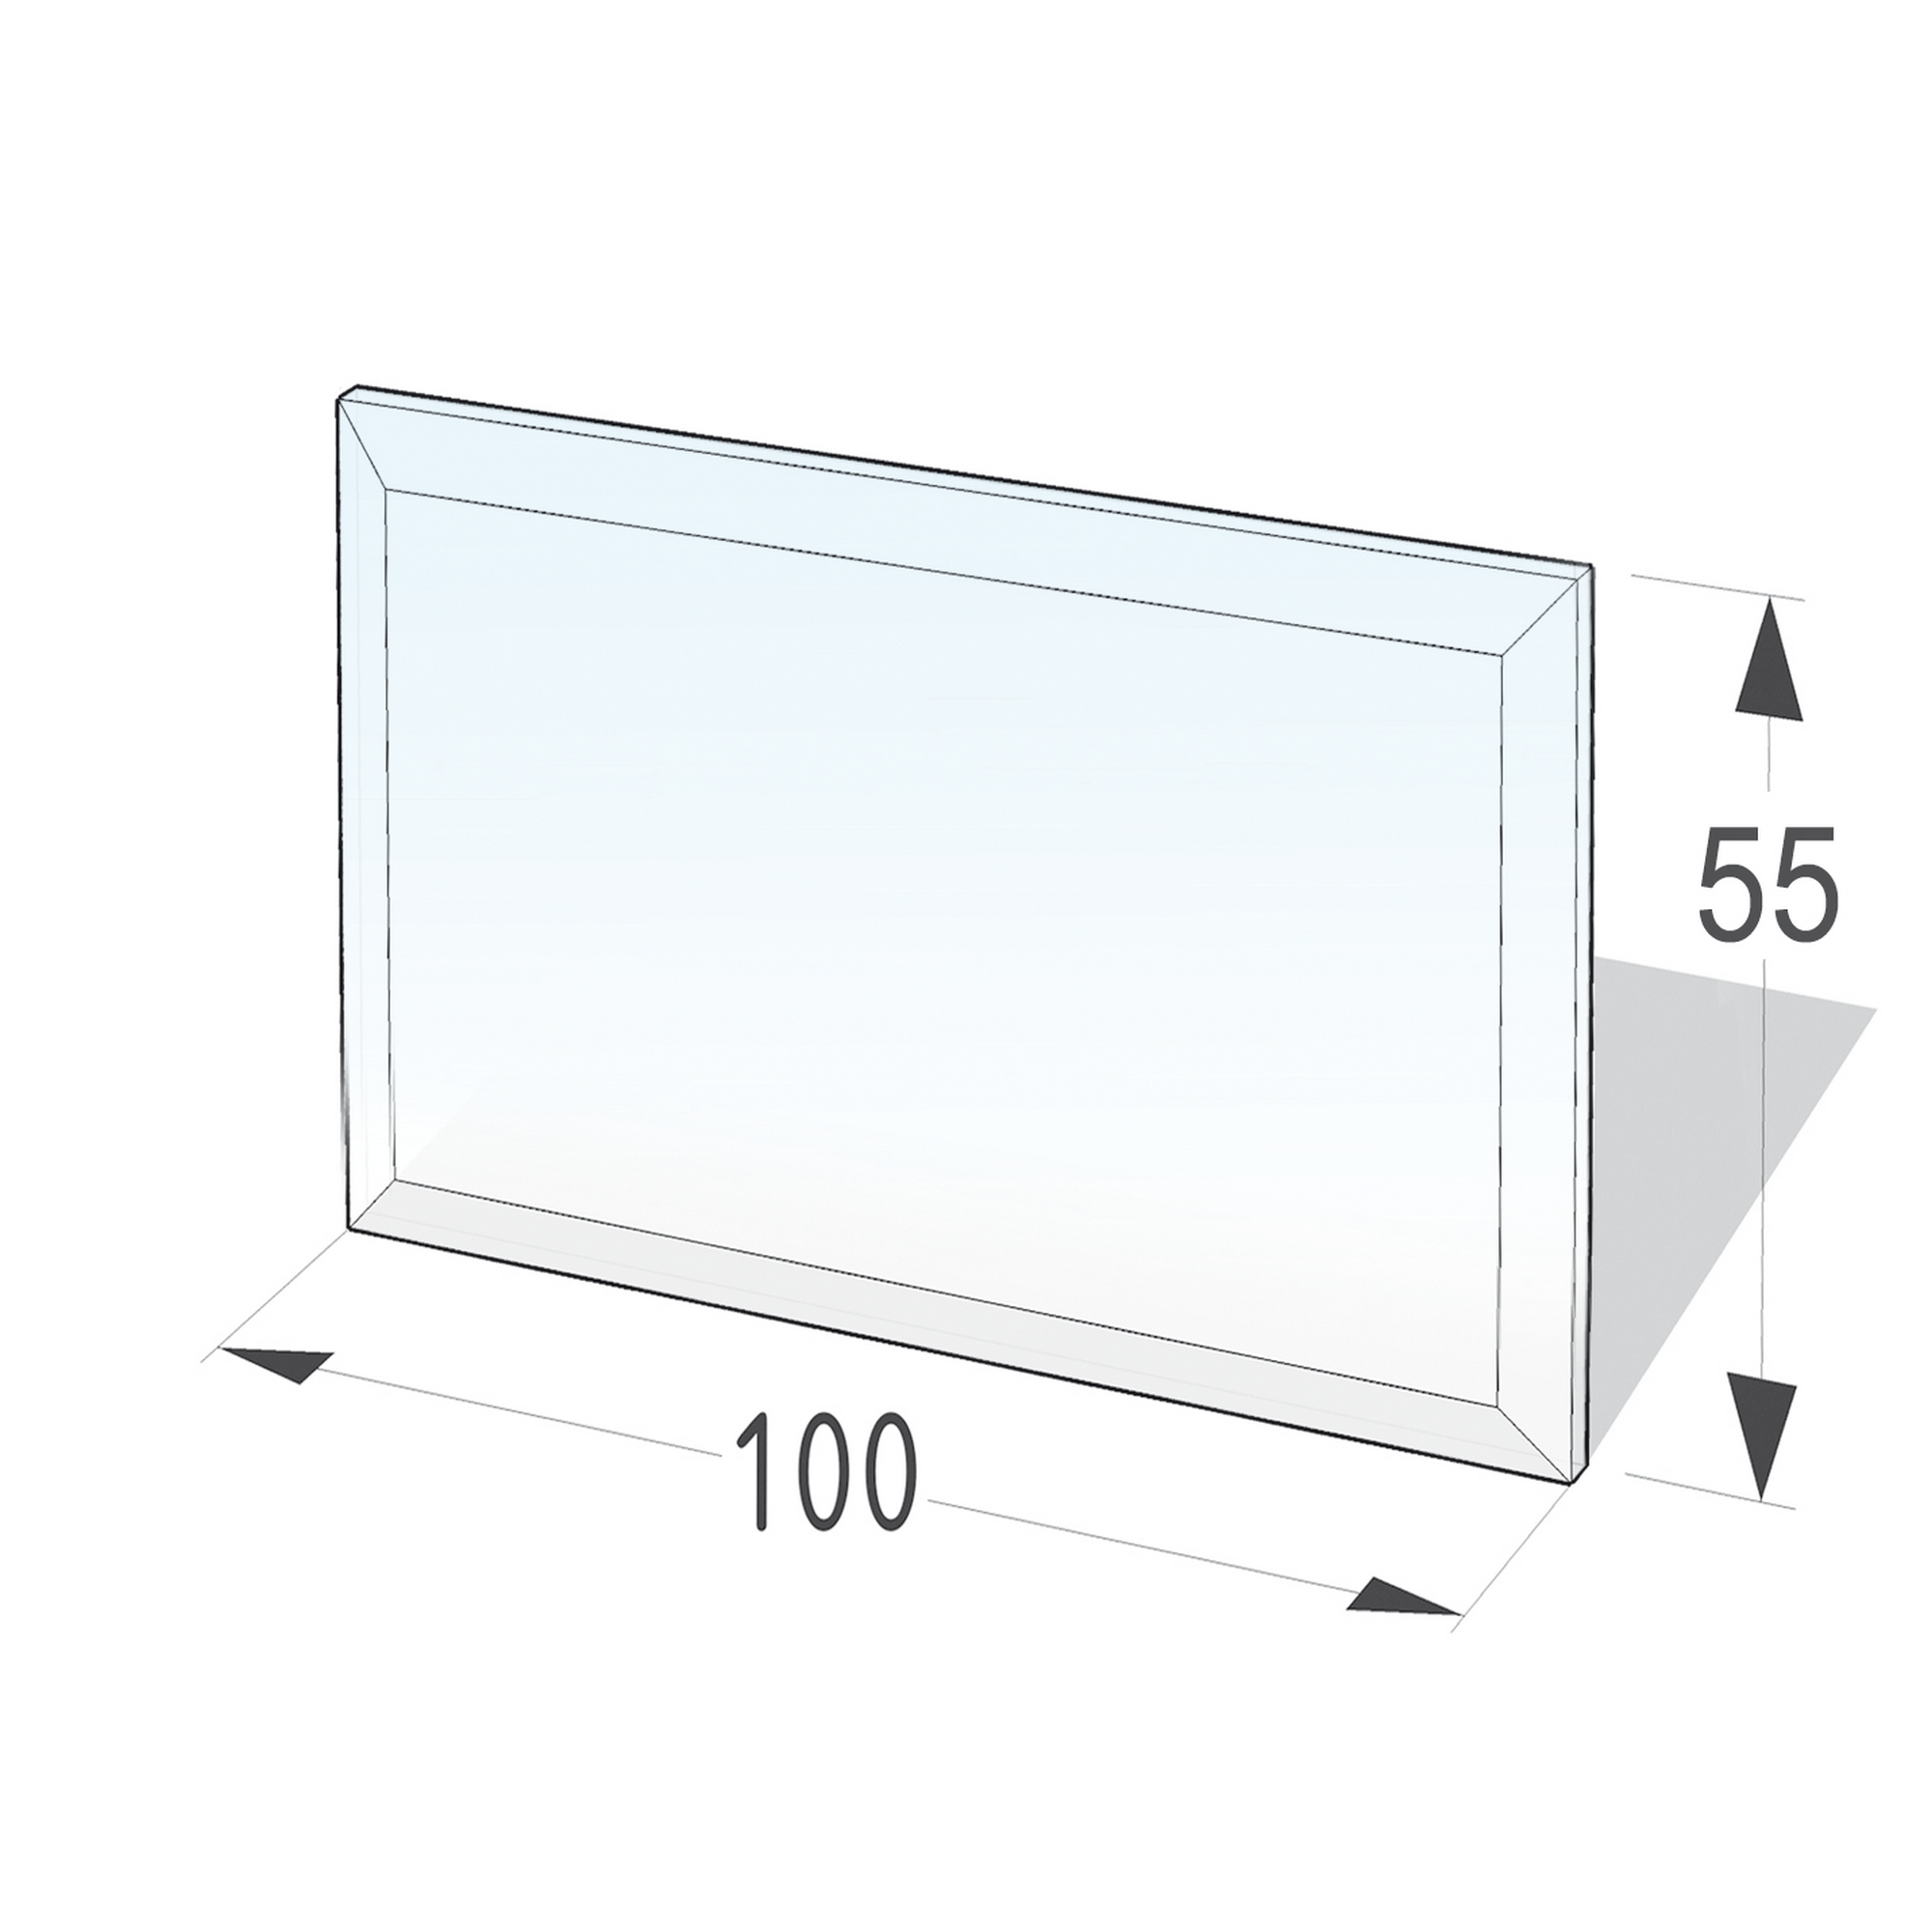 Funkenschutzplatte rechteckig 100 x 55 x 0,6 cm Glas transparent + product picture